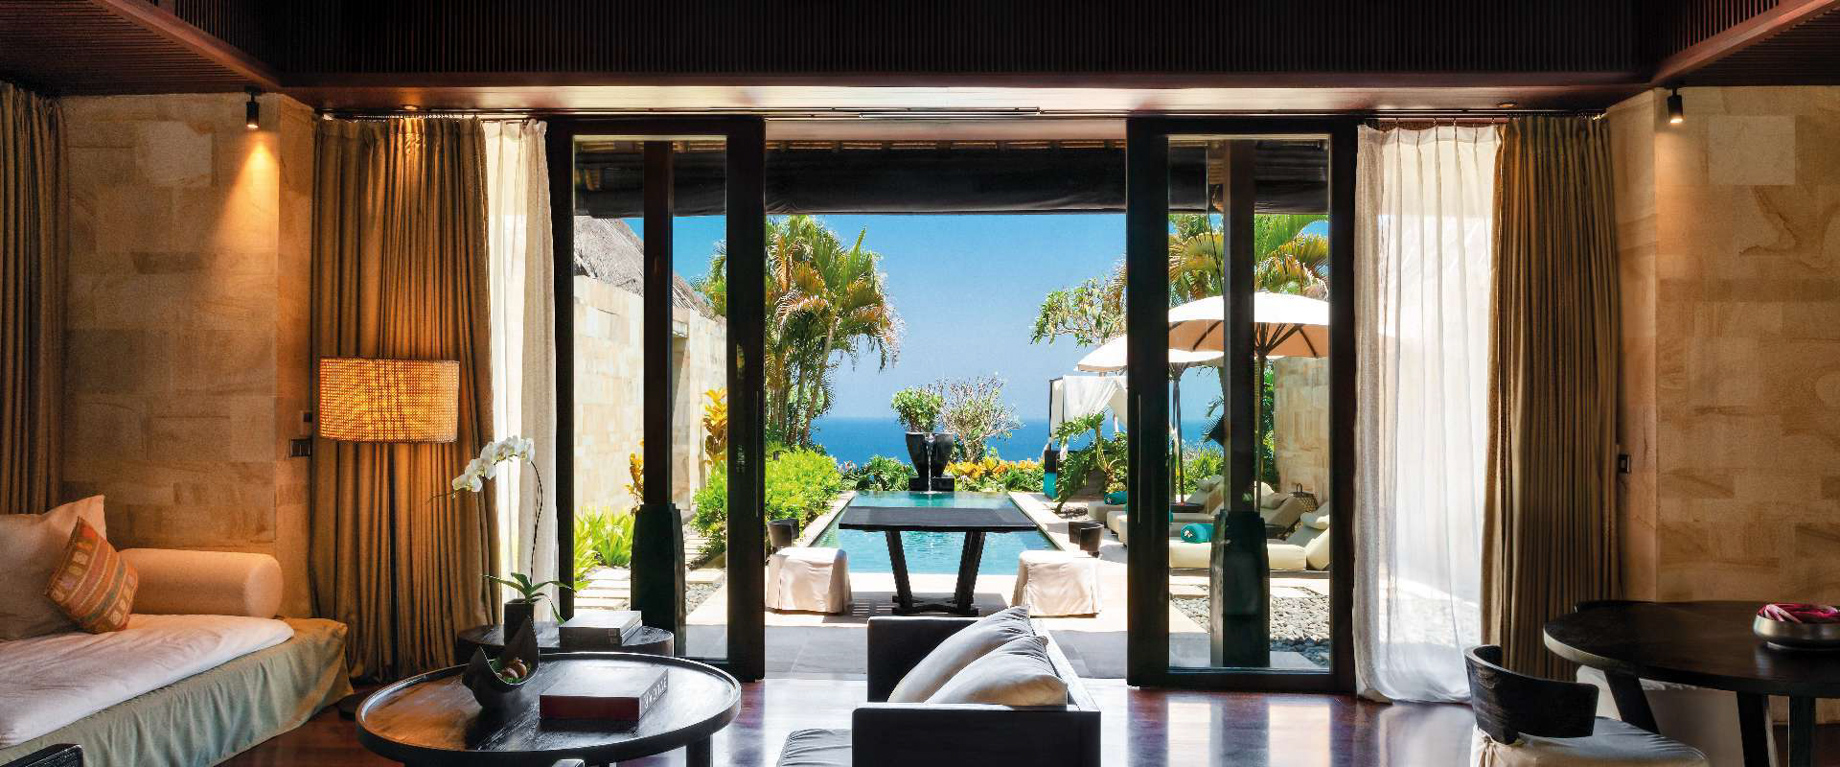 Bvlgari Resort Bali – Uluwatu, Bali, Indonesia – Ocean Cliff Villa Living Room Ocean View